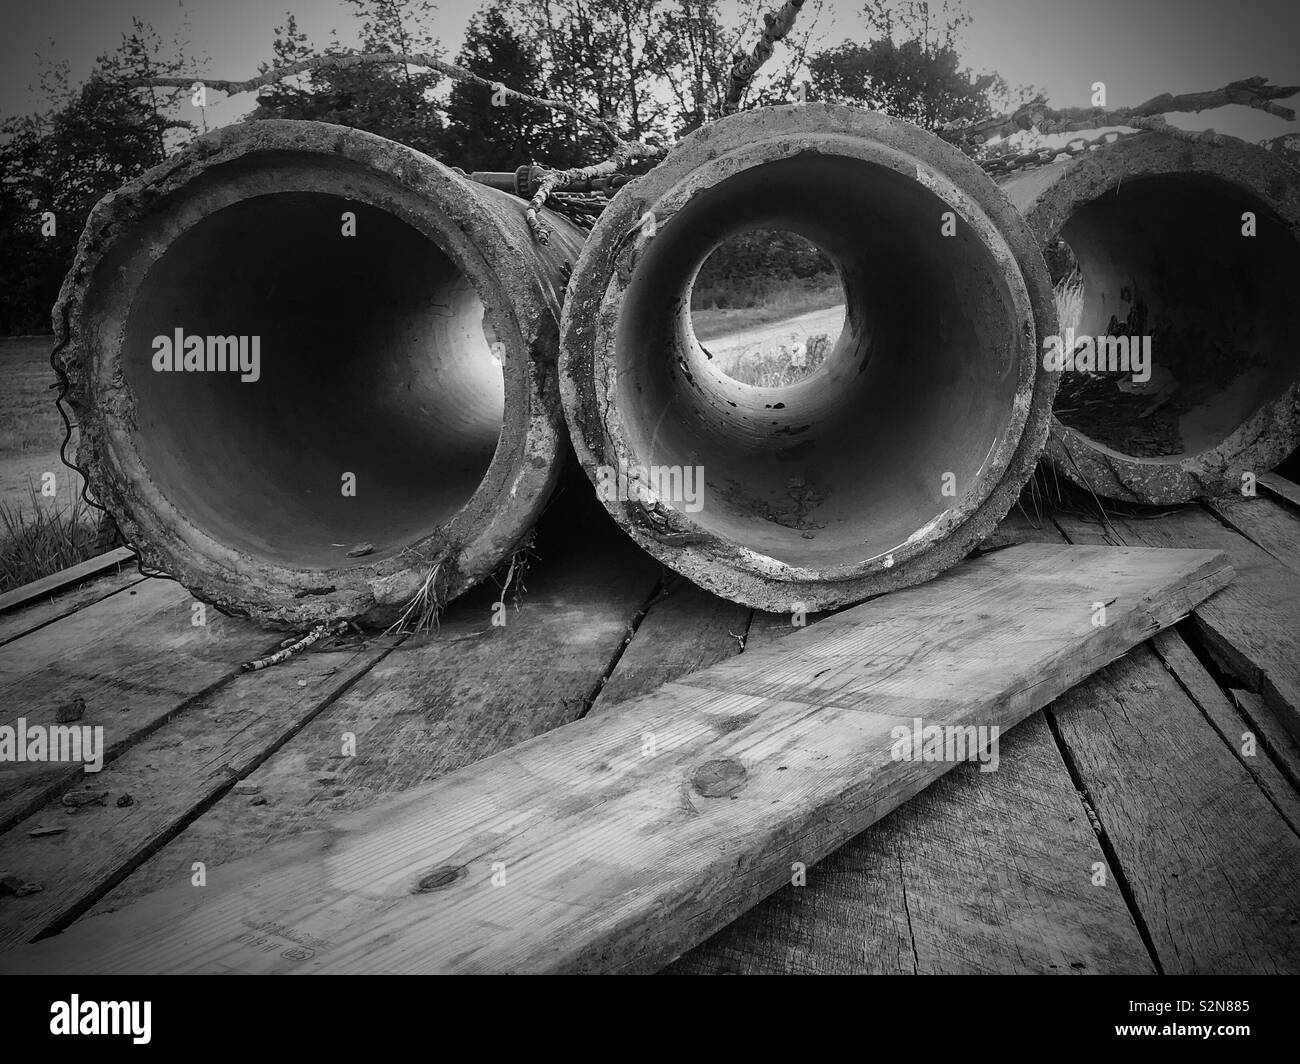 Foto in bianco e nero di tubazioni in calcestruzzo su un rimorchio Foto Stock